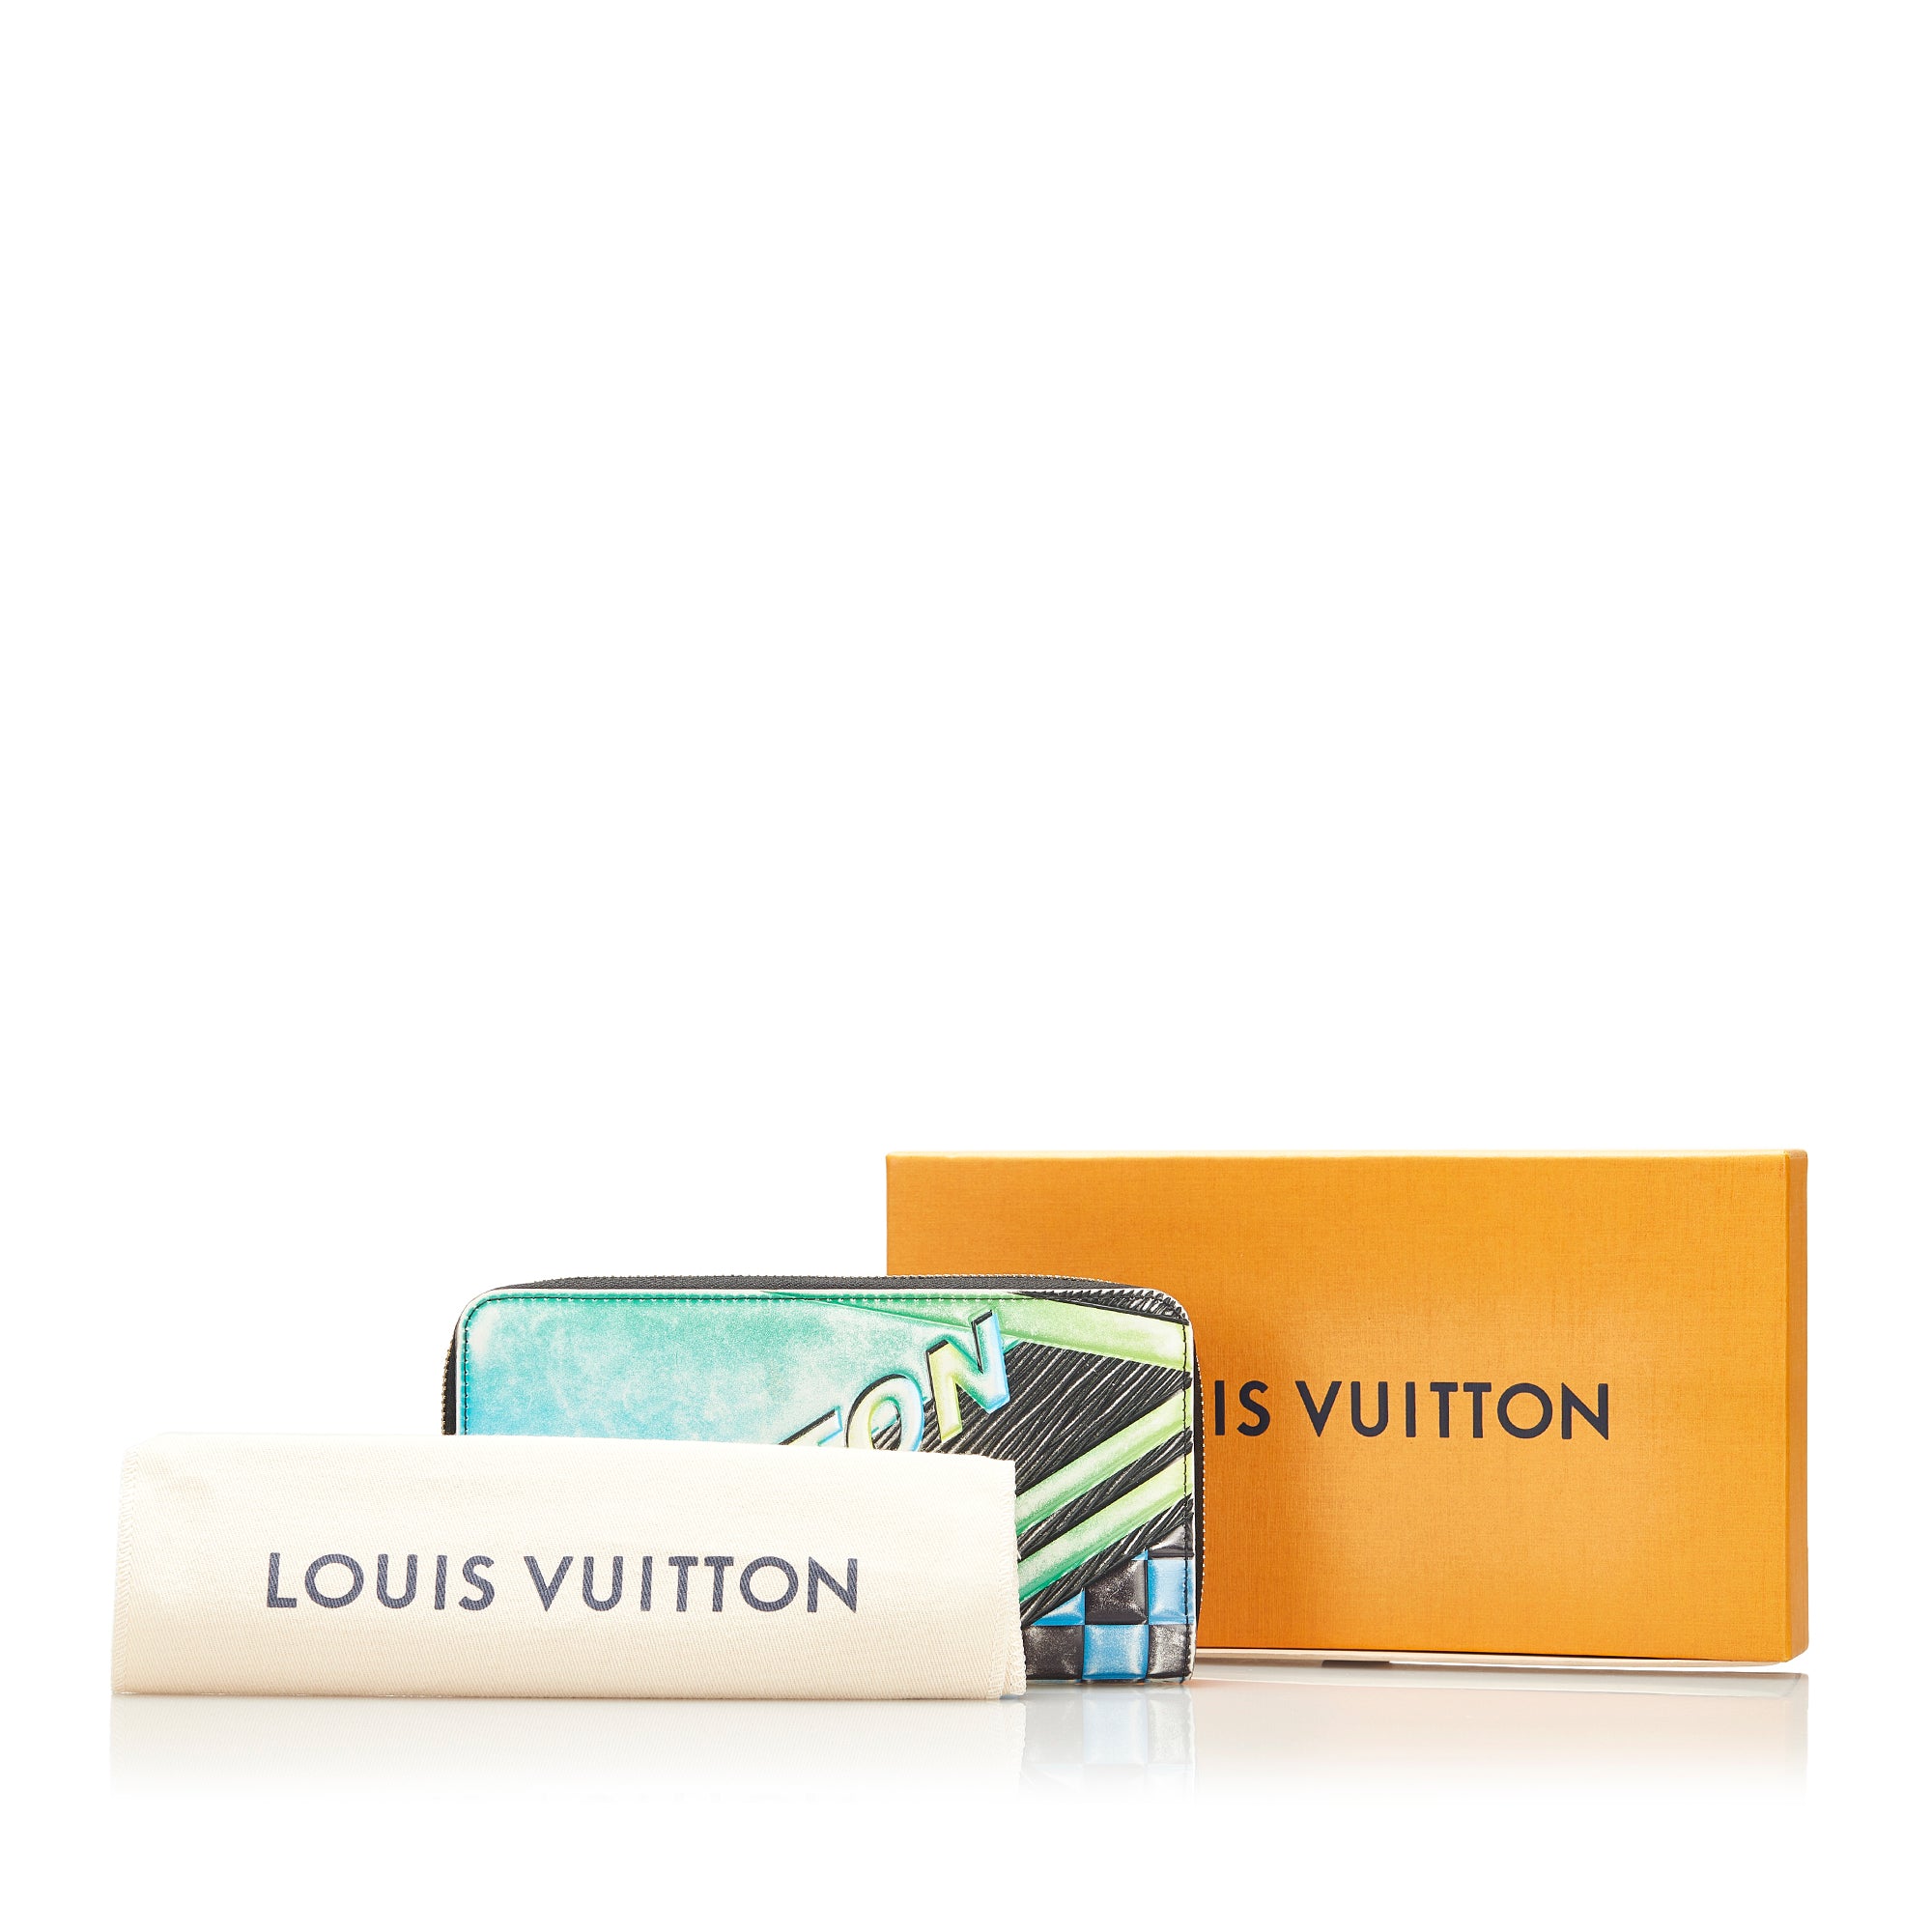 Louis Vuitton Race Print Limited Edition EPI Leather Zippy Wallet Multicolor